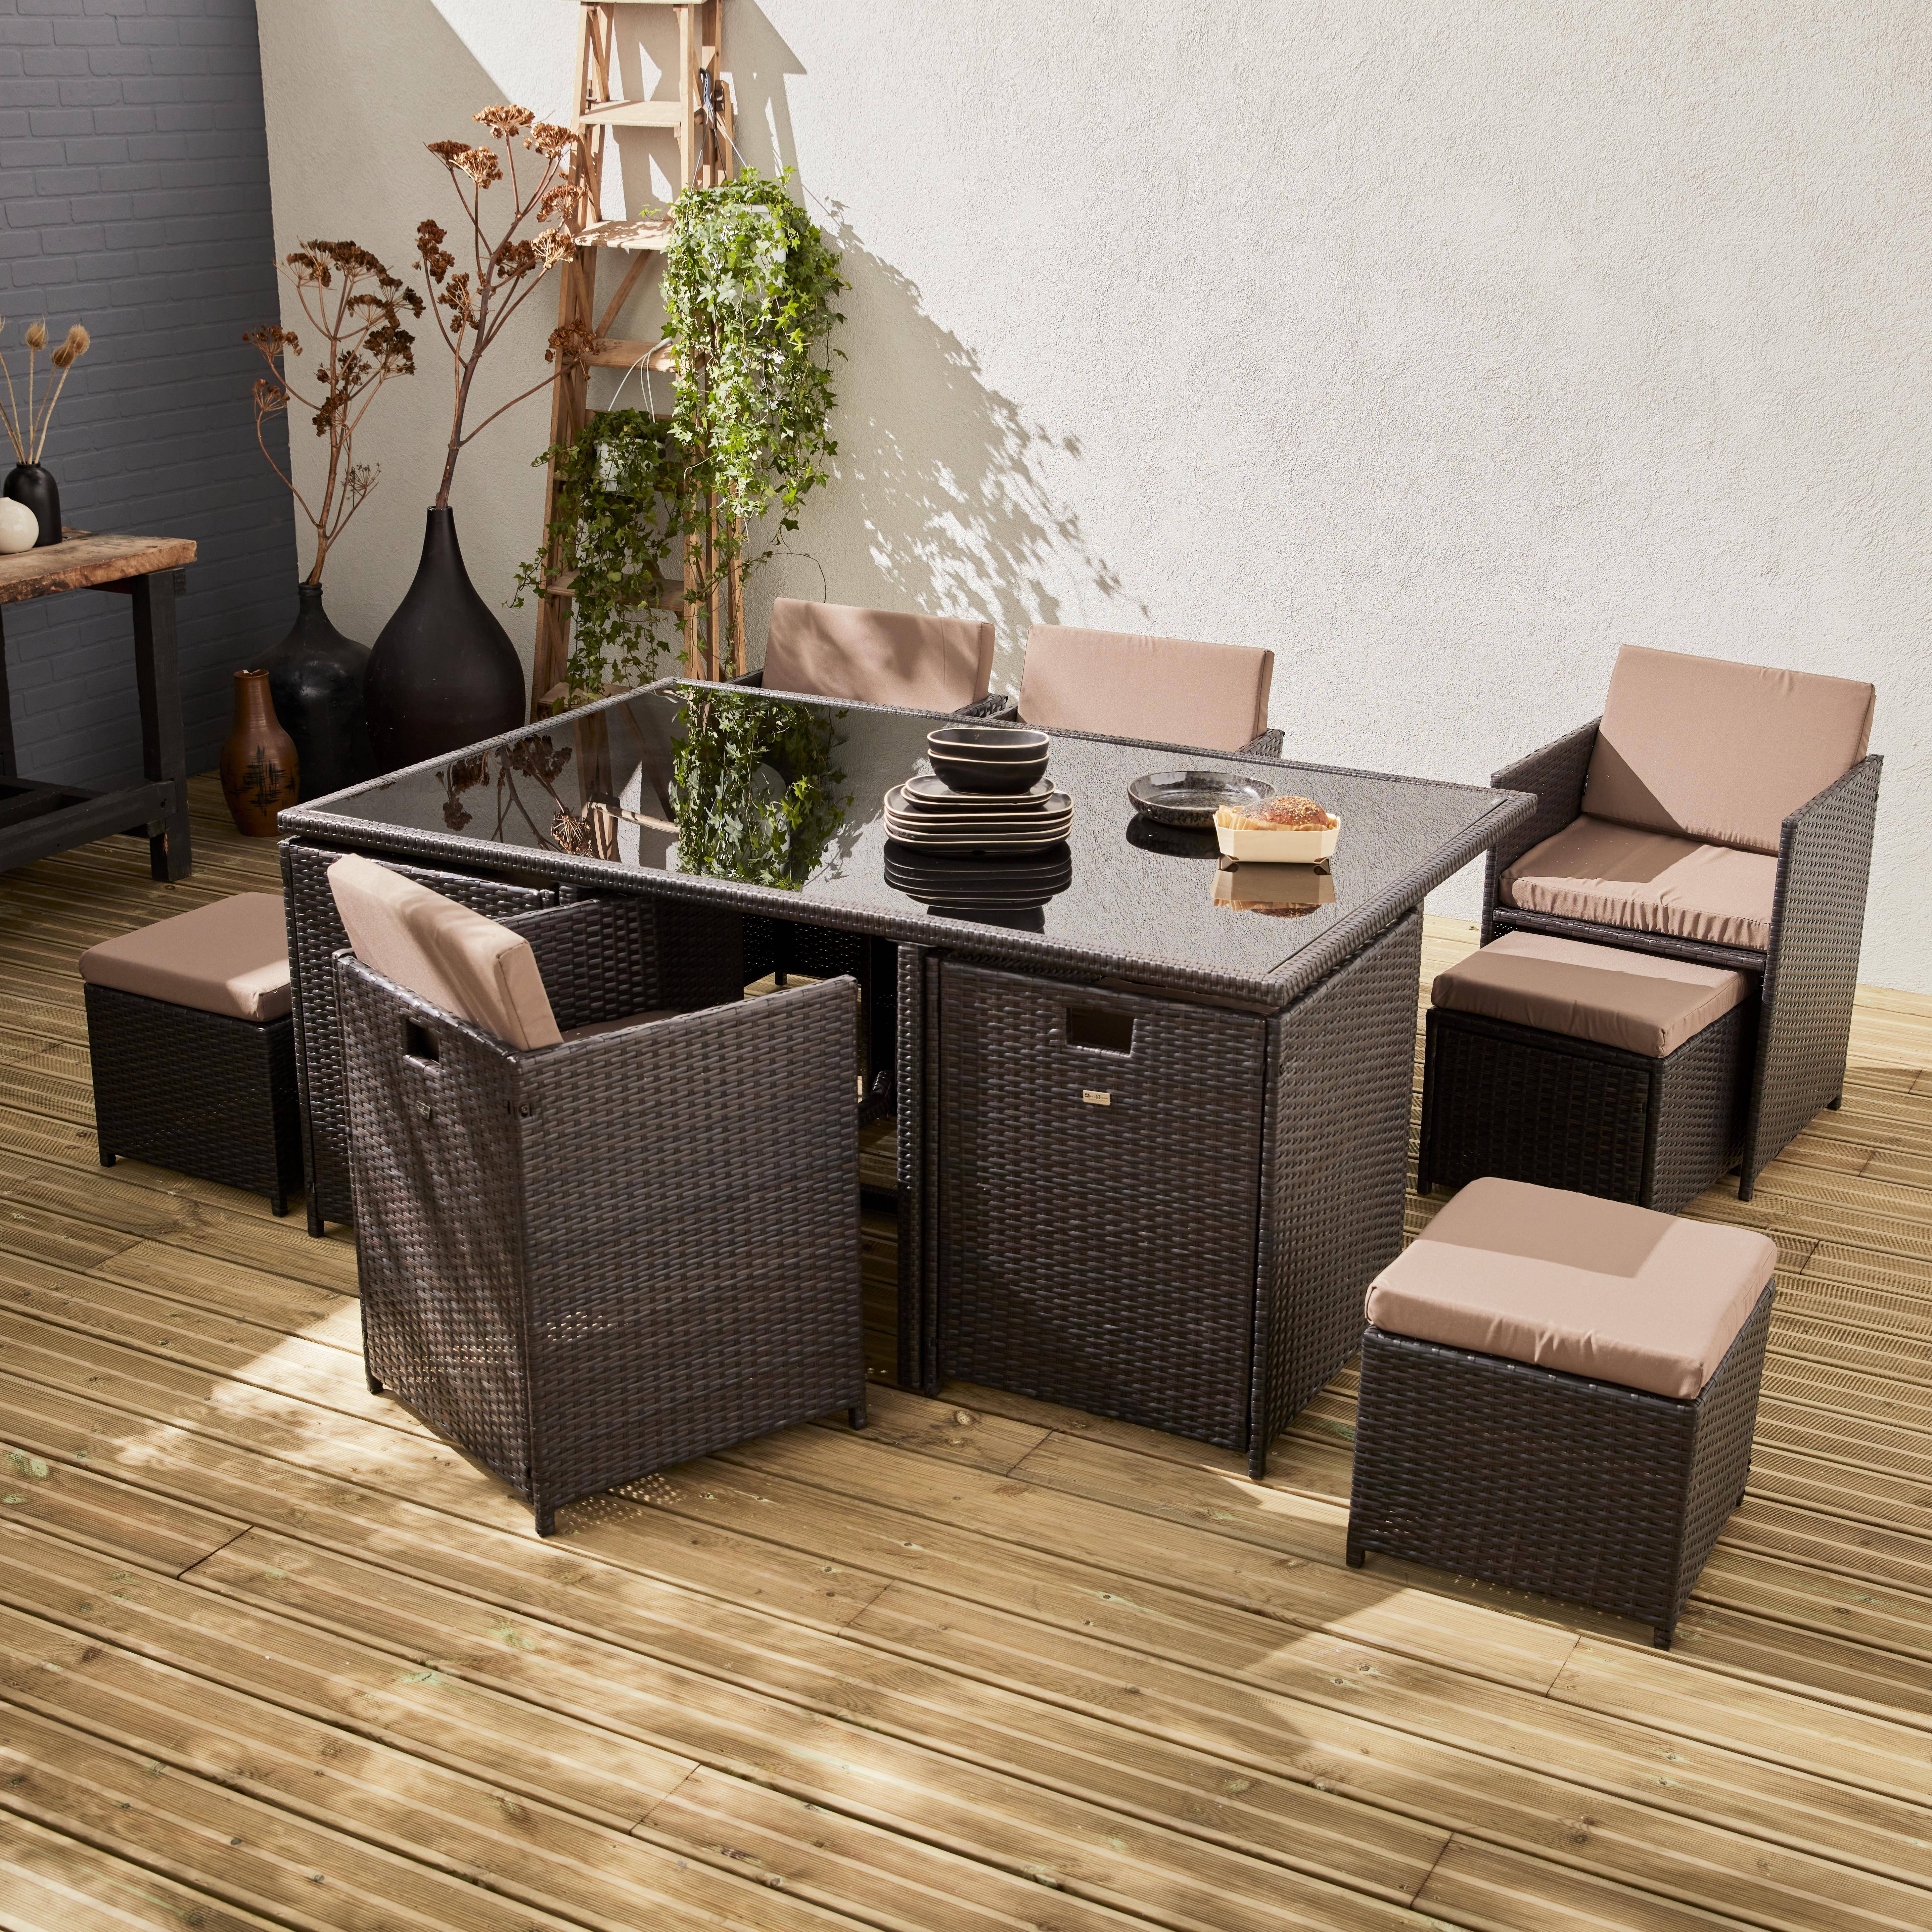 Conjunto de muebles de jardín 6-10 plazas - Vabo- Color marrón, cojines color pardo, mesa incorporada. Photo1